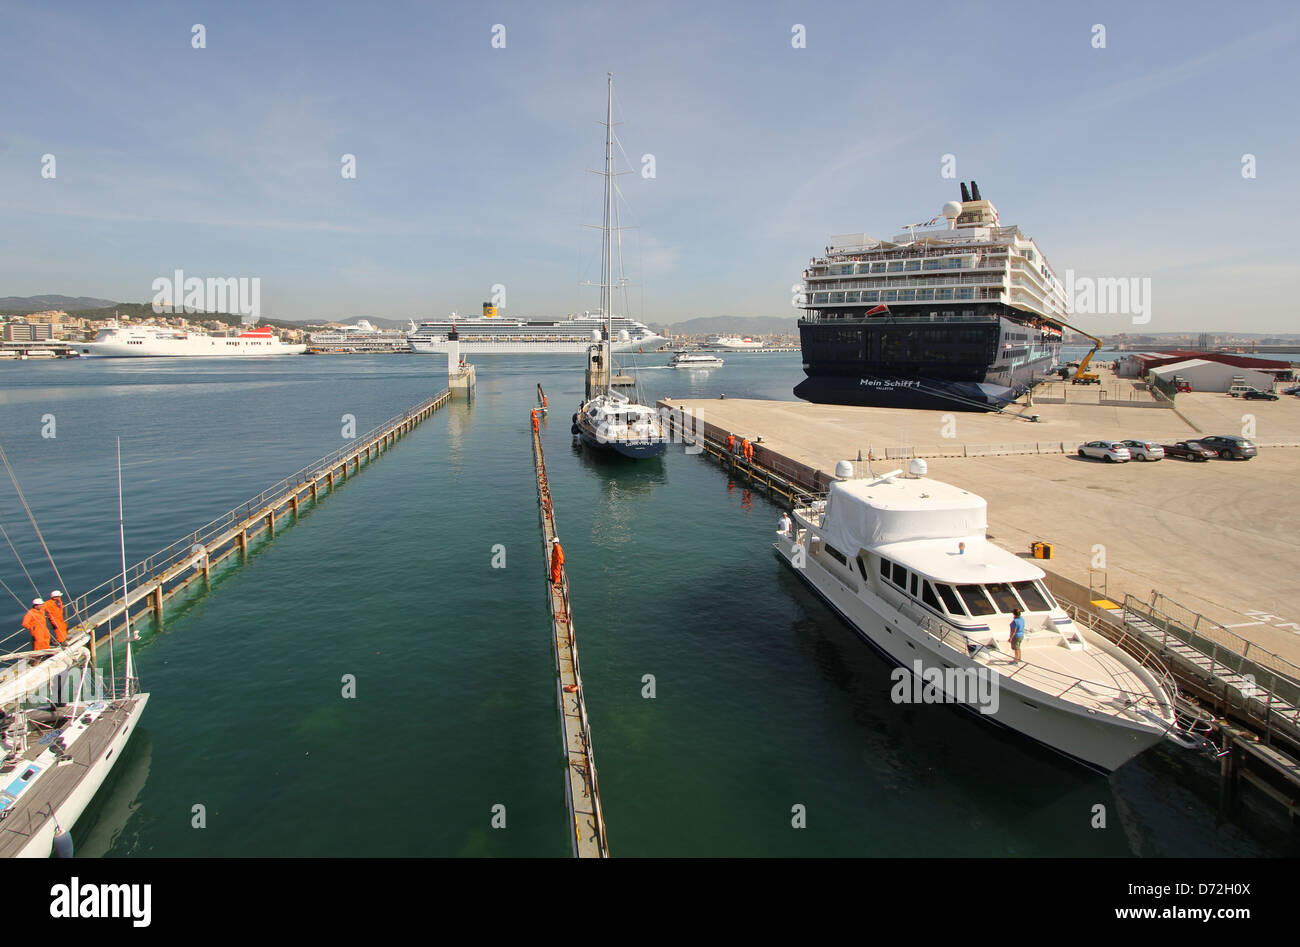 Dock Express / Organisation des transports location de yacht semi-submersible "super transporteur serviteur 4' dans le port de Palma de Majorque. Banque D'Images